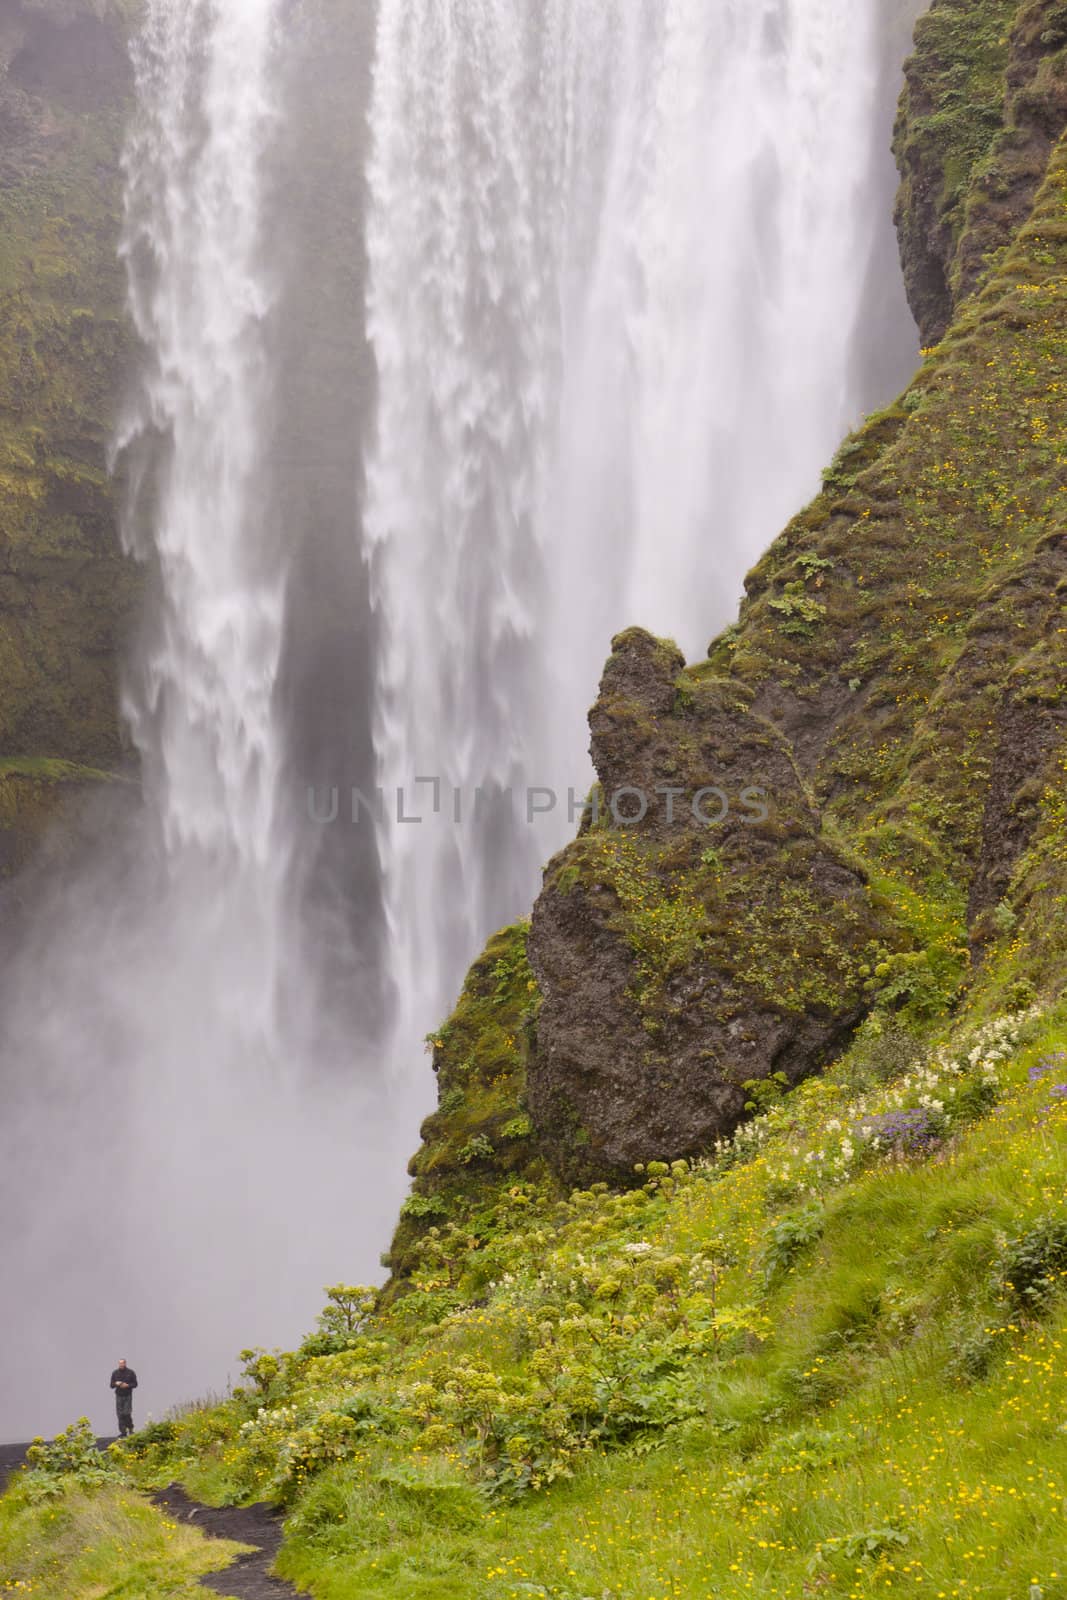 Skogafoss waterfall in Iceland by parys